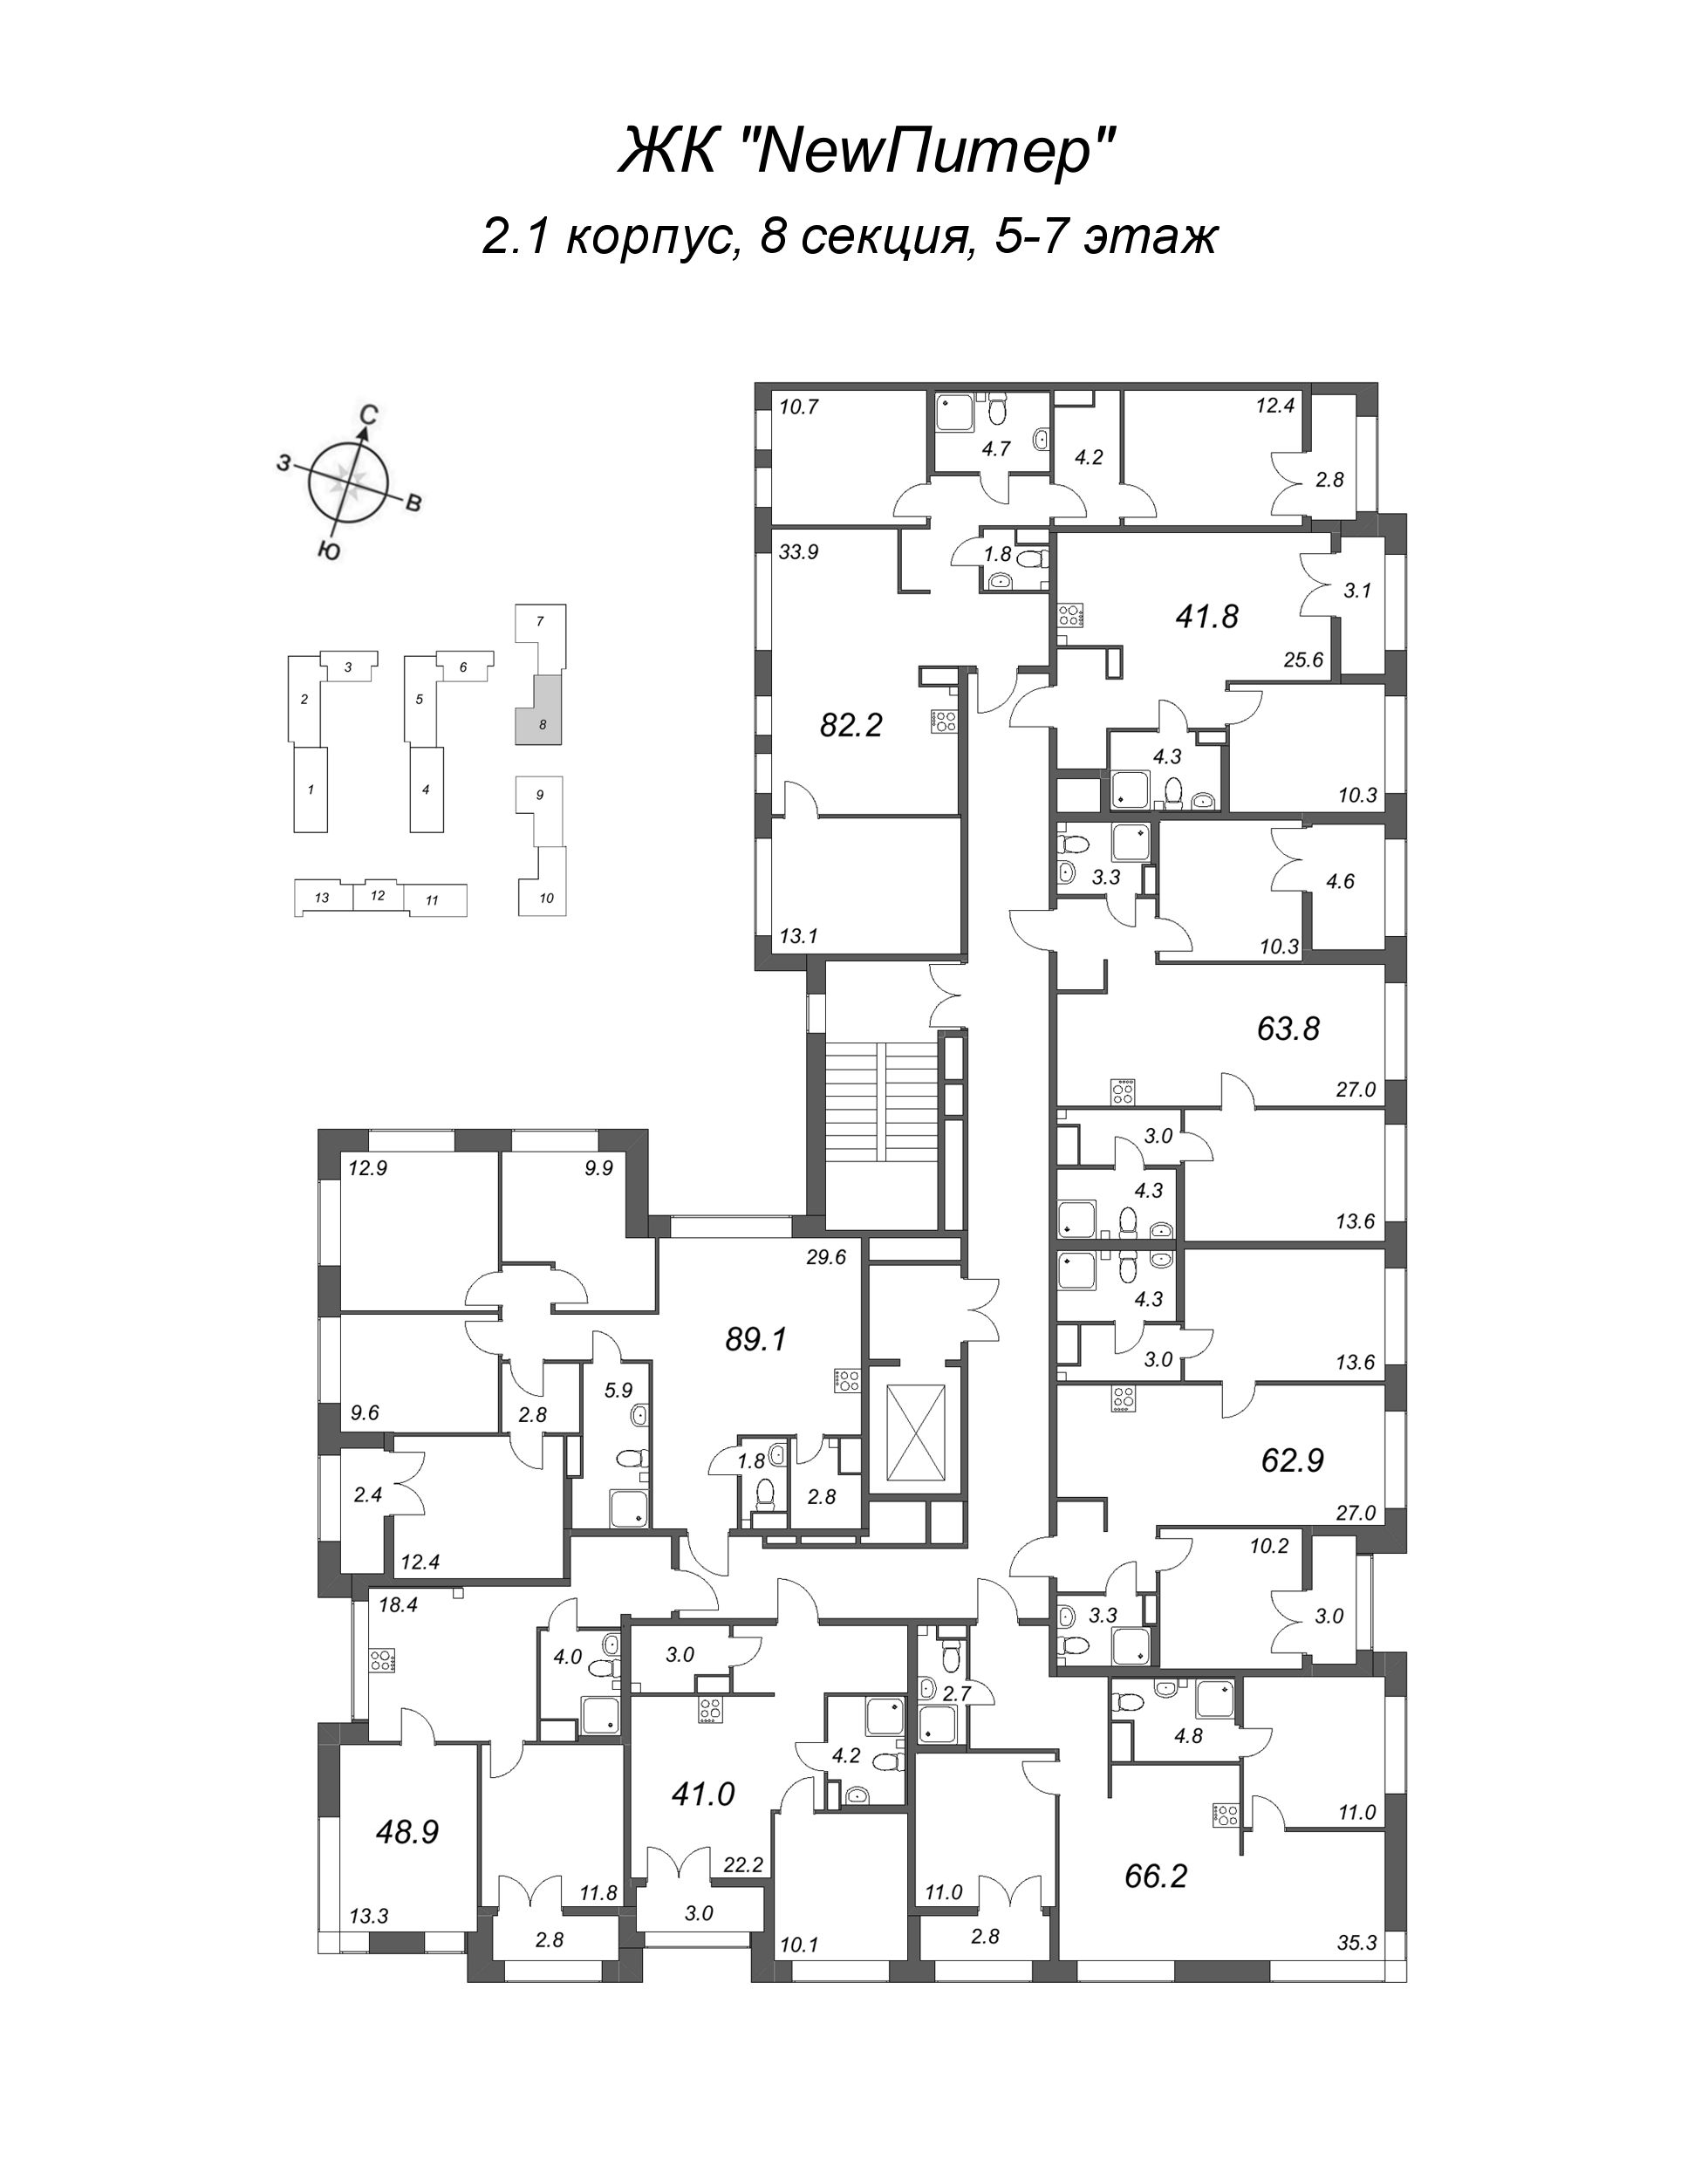 4-комнатная (Евро) квартира, 82.2 м² в ЖК "NewПитер 2.0" - планировка этажа